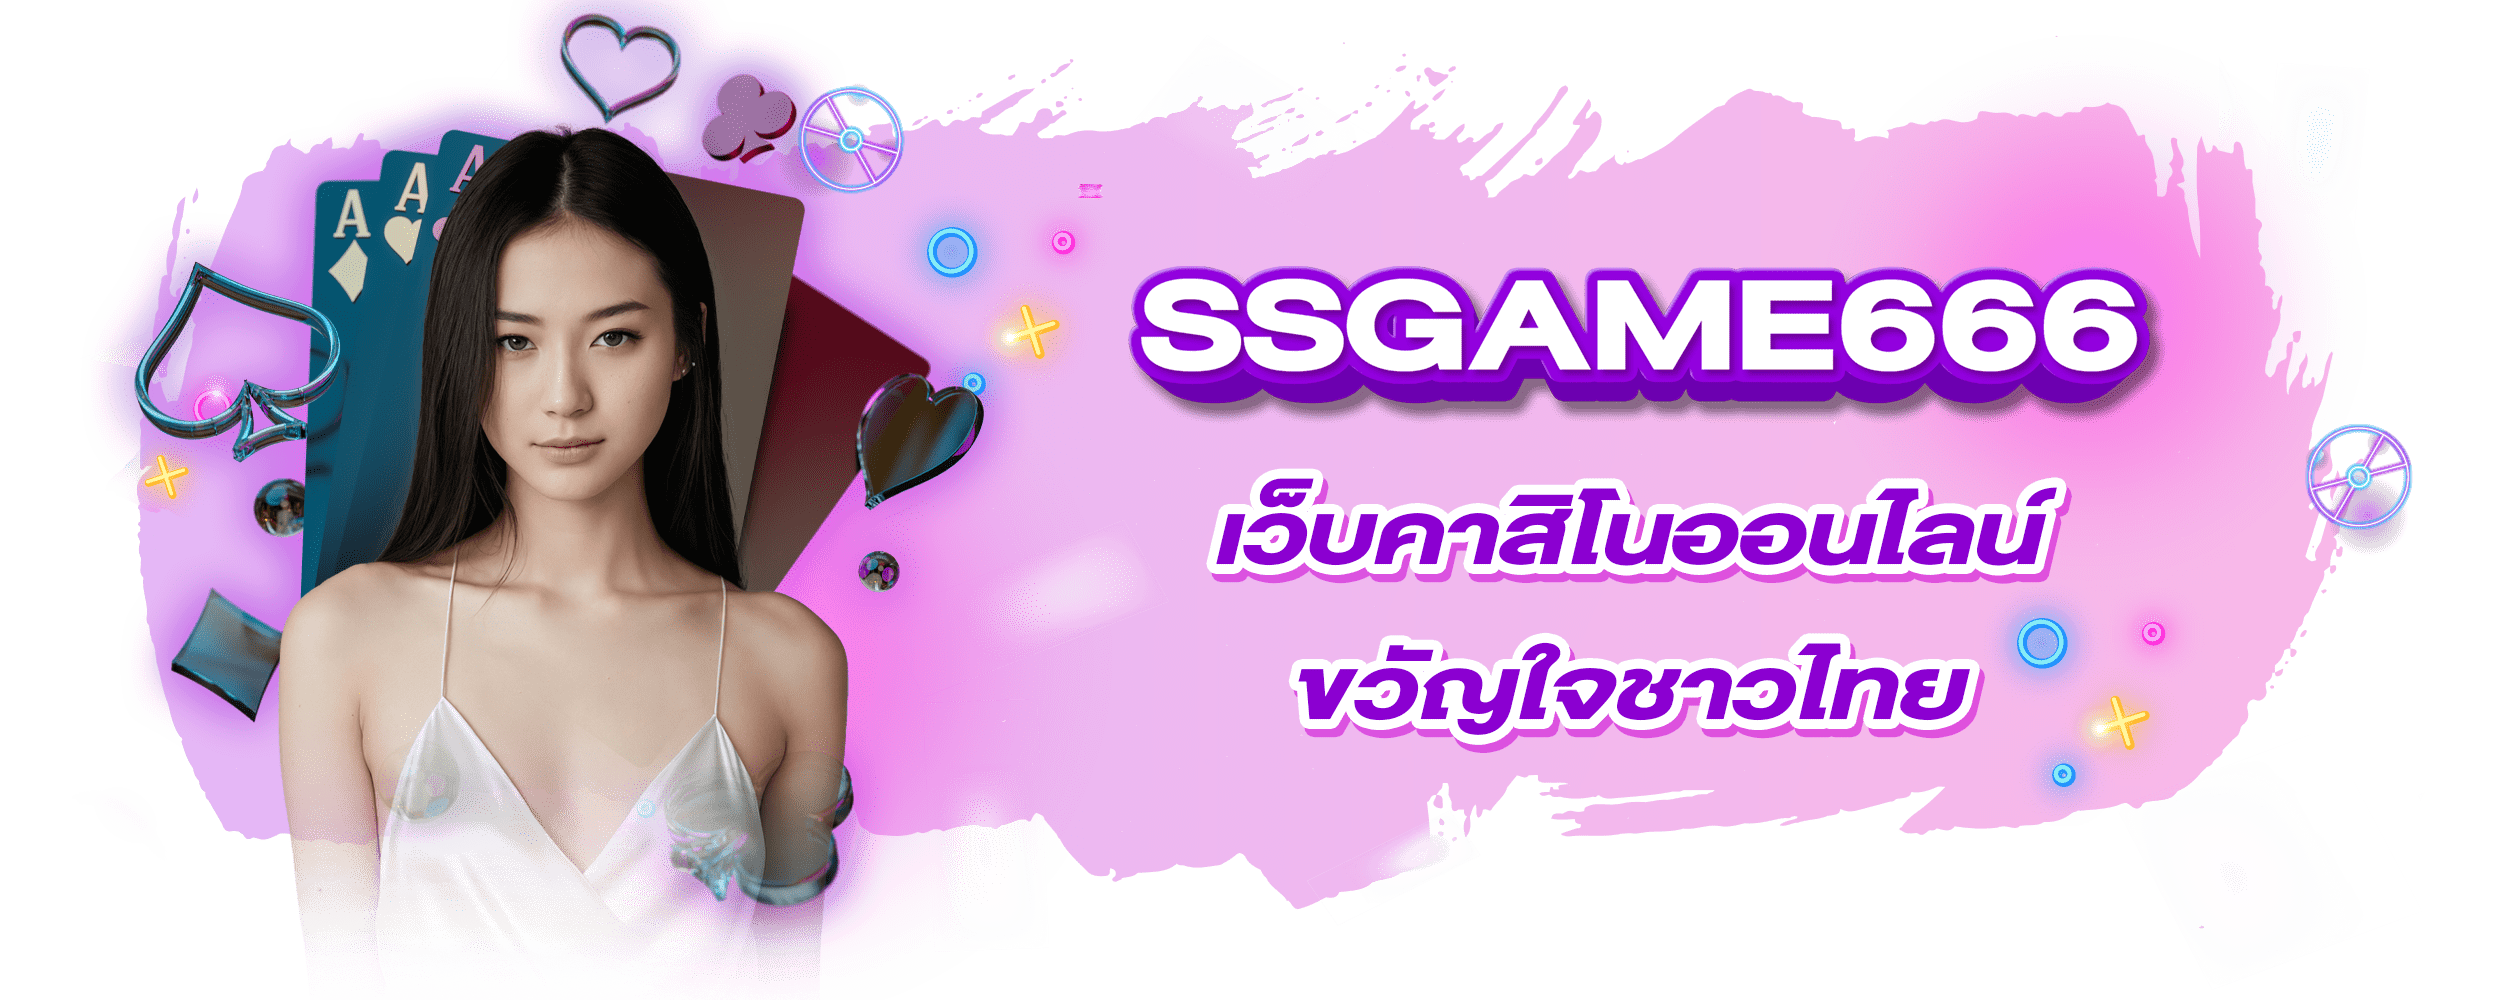 ssgame666 เว็บคาสิโนออนไลน์